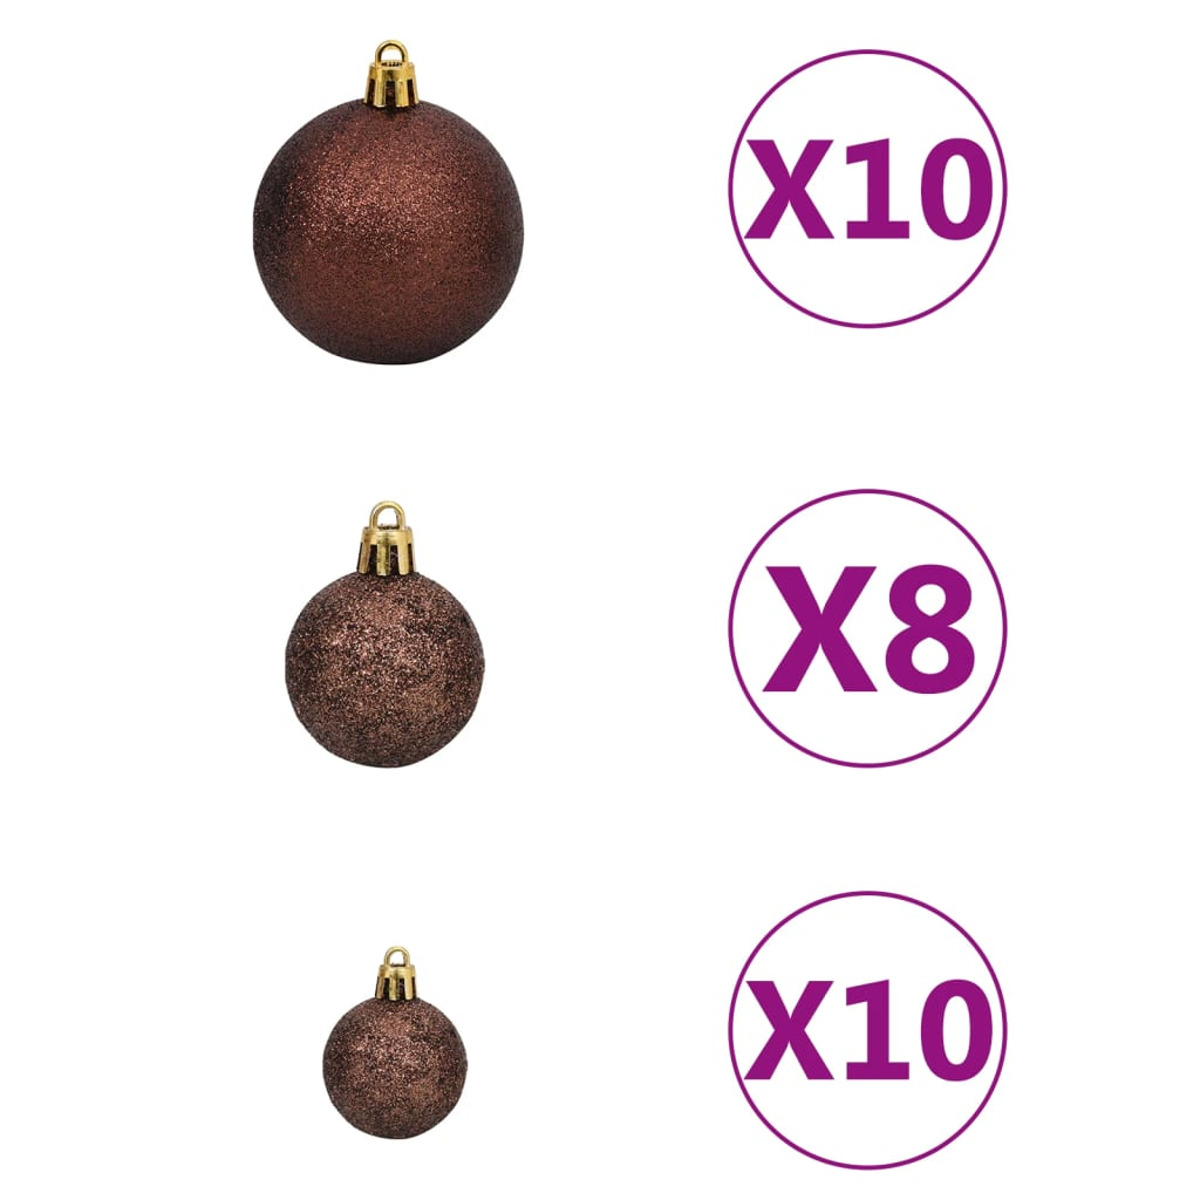 VIDAXL 3077789 Weihnachtsbaum